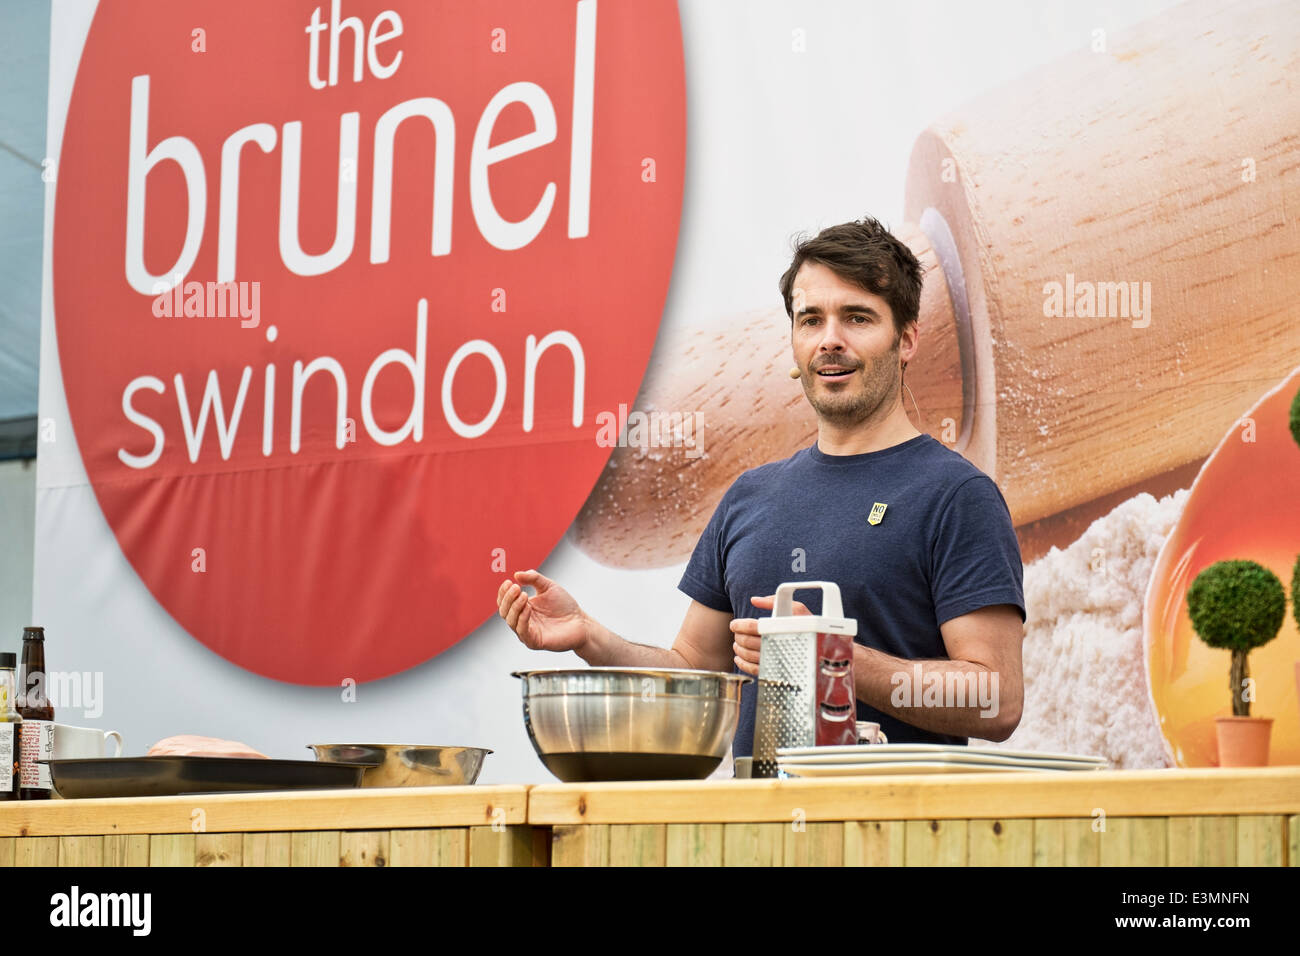 Tom Baker célébrité Herbert, présentant une démonstration de cuisson à la farine montrent, dans le centre commercial Brunel, Swindon 2014 Banque D'Images